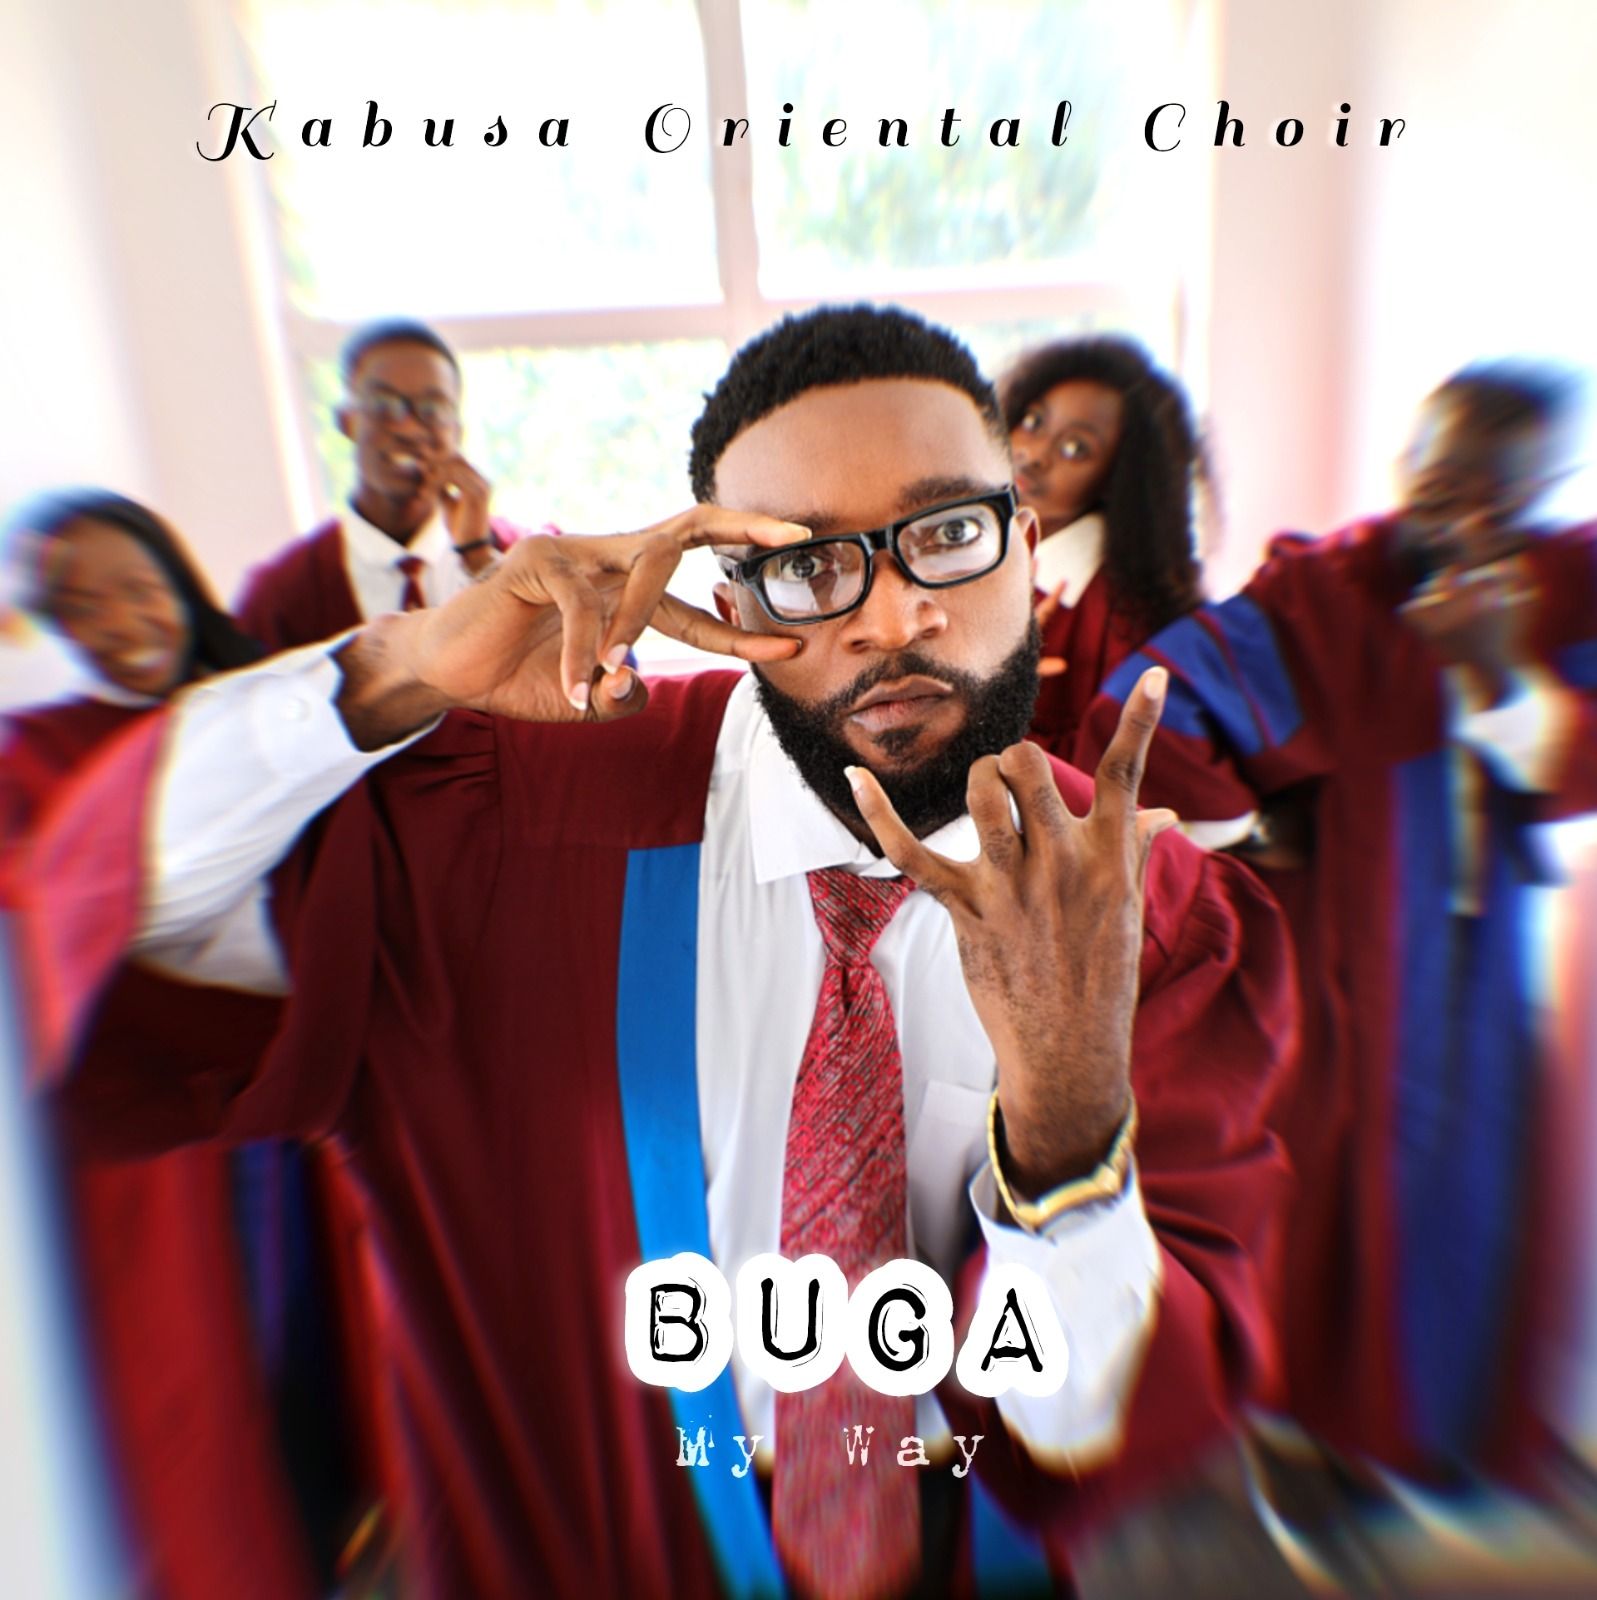 Kabusa Oriental Choir — Buga My Way